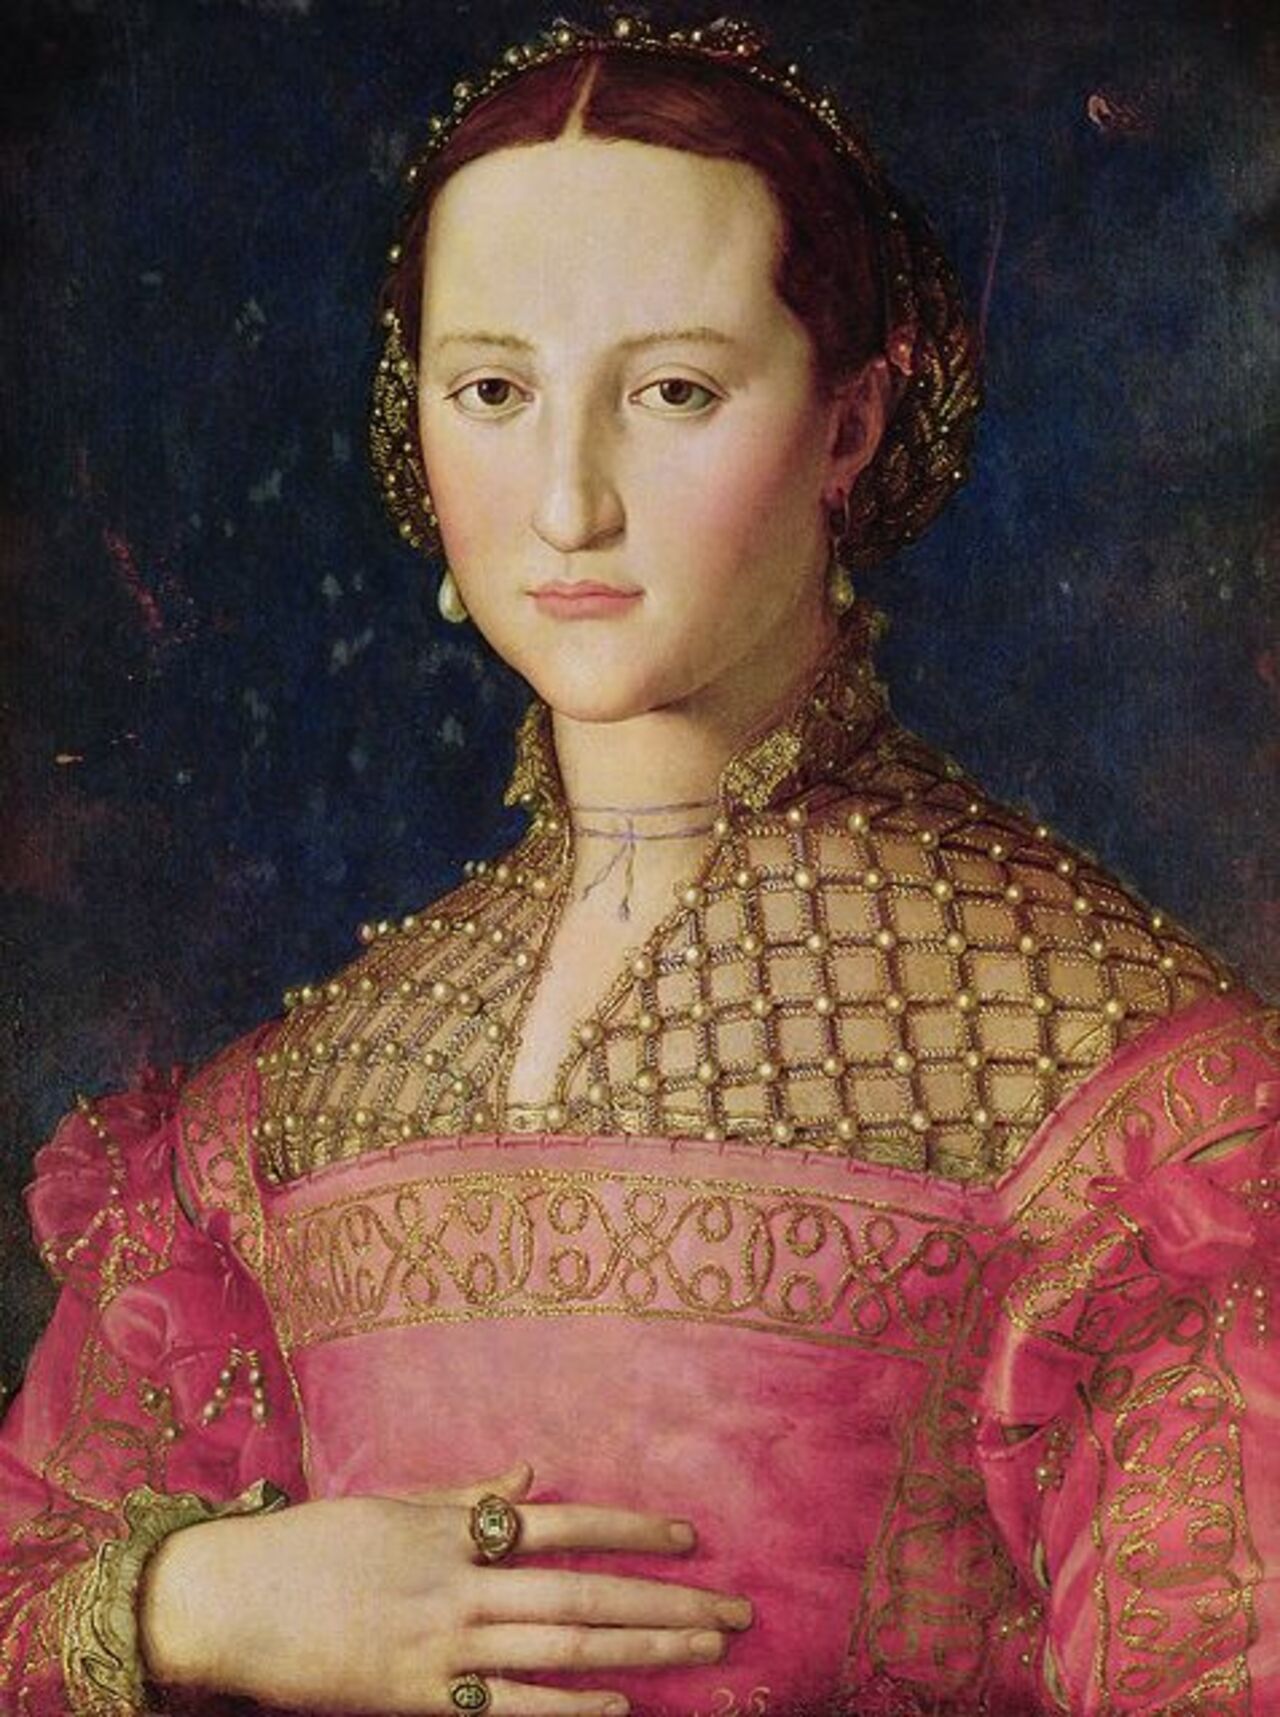 Portrait of Eleonora di Toledo by Agnolo di Cosimo ("Il Bronzino," Italian, 1503-1572), 1545. http://t.co/tqAPA4HckC